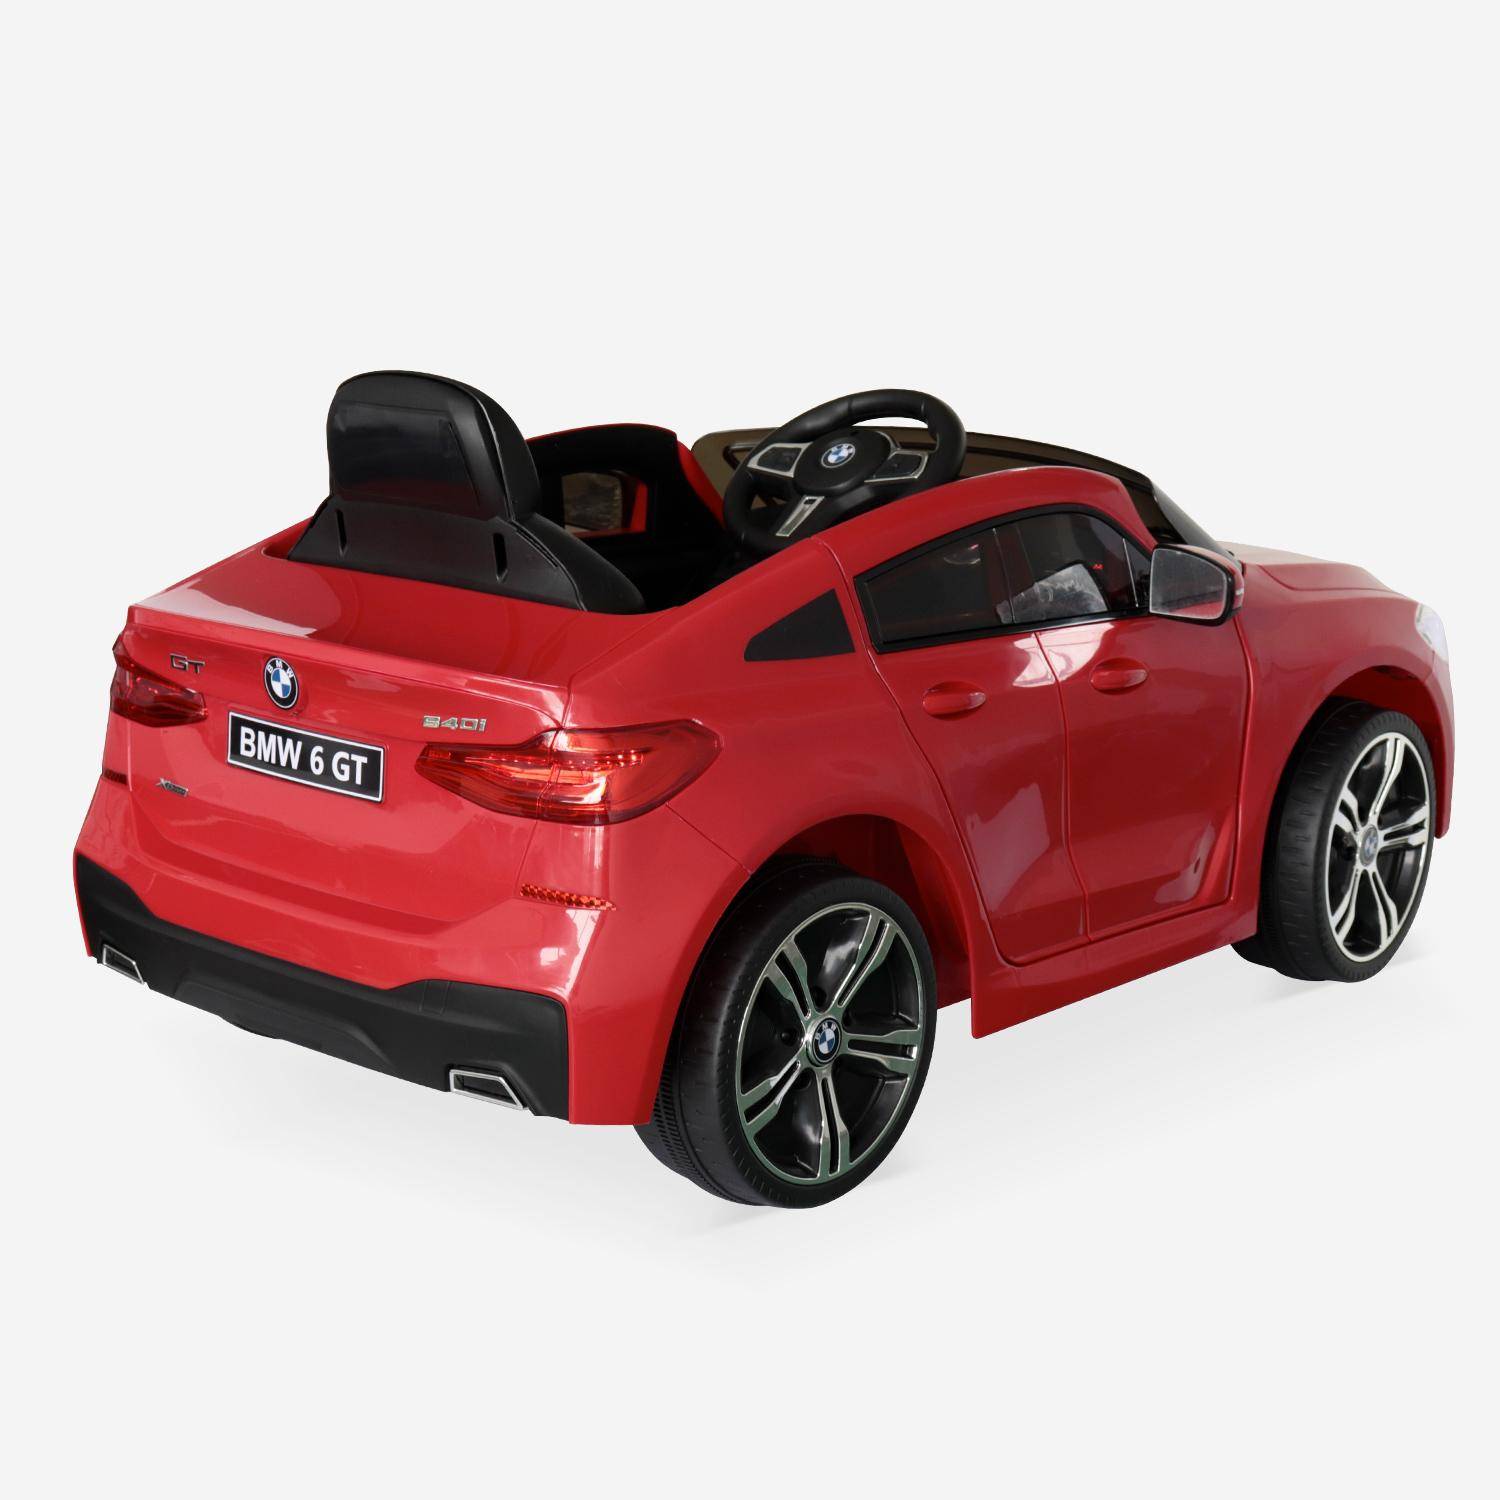 BMW Serie 6GT Gran Turismo rossa, macchina elettrica per bambini 12V 4 Ah, 1 posto, con autoradio e telecomando Photo3